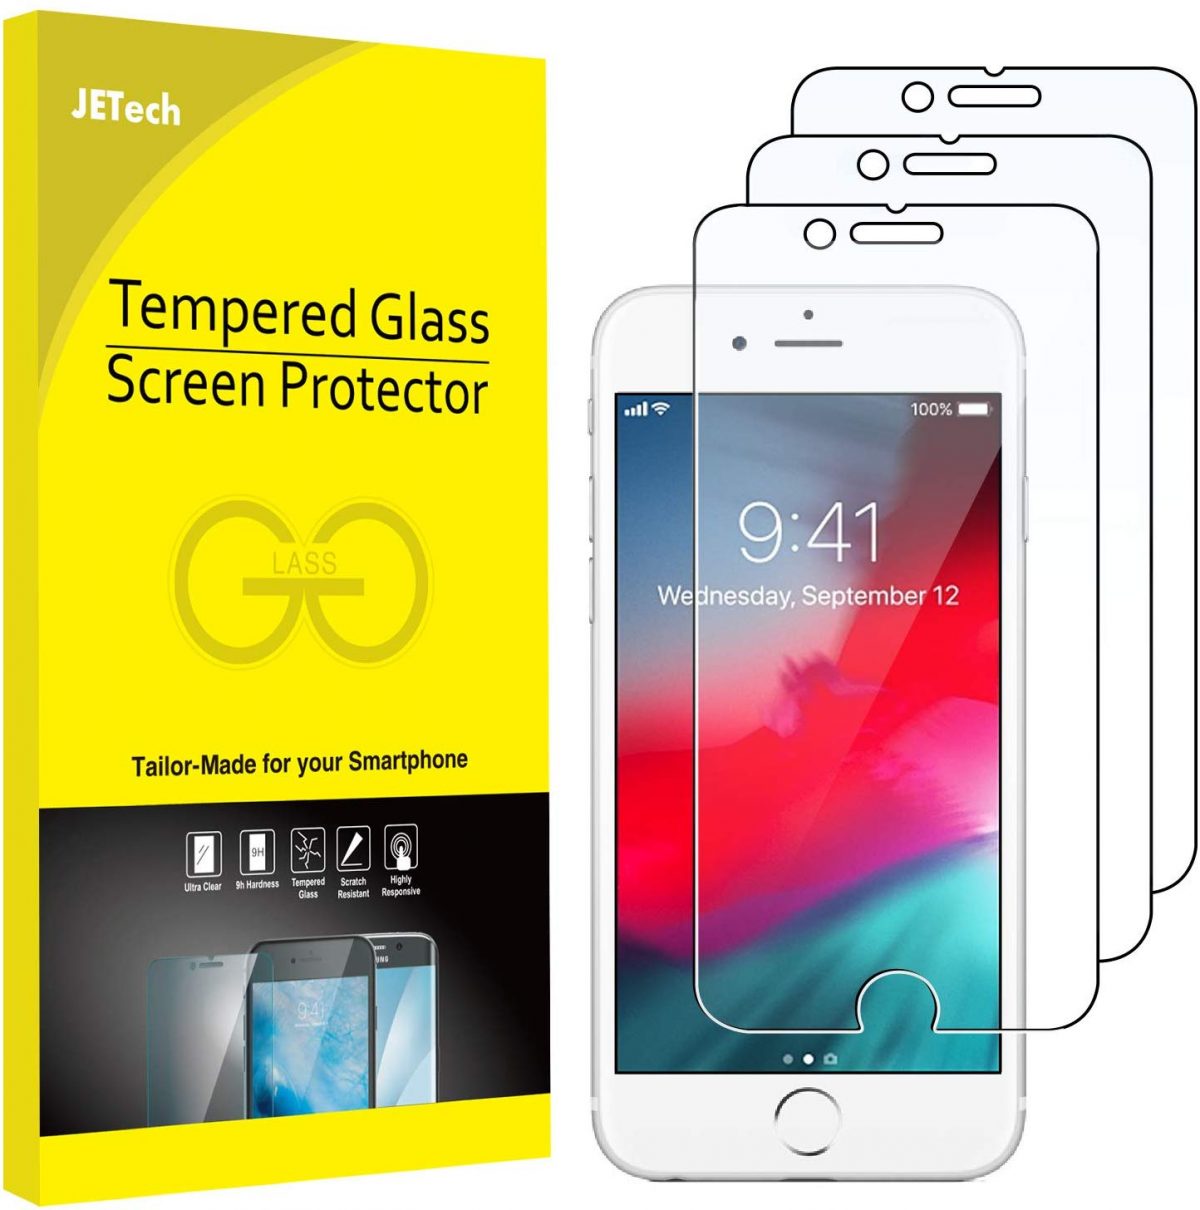 15 Best Smartphone Screen Protectors To Get